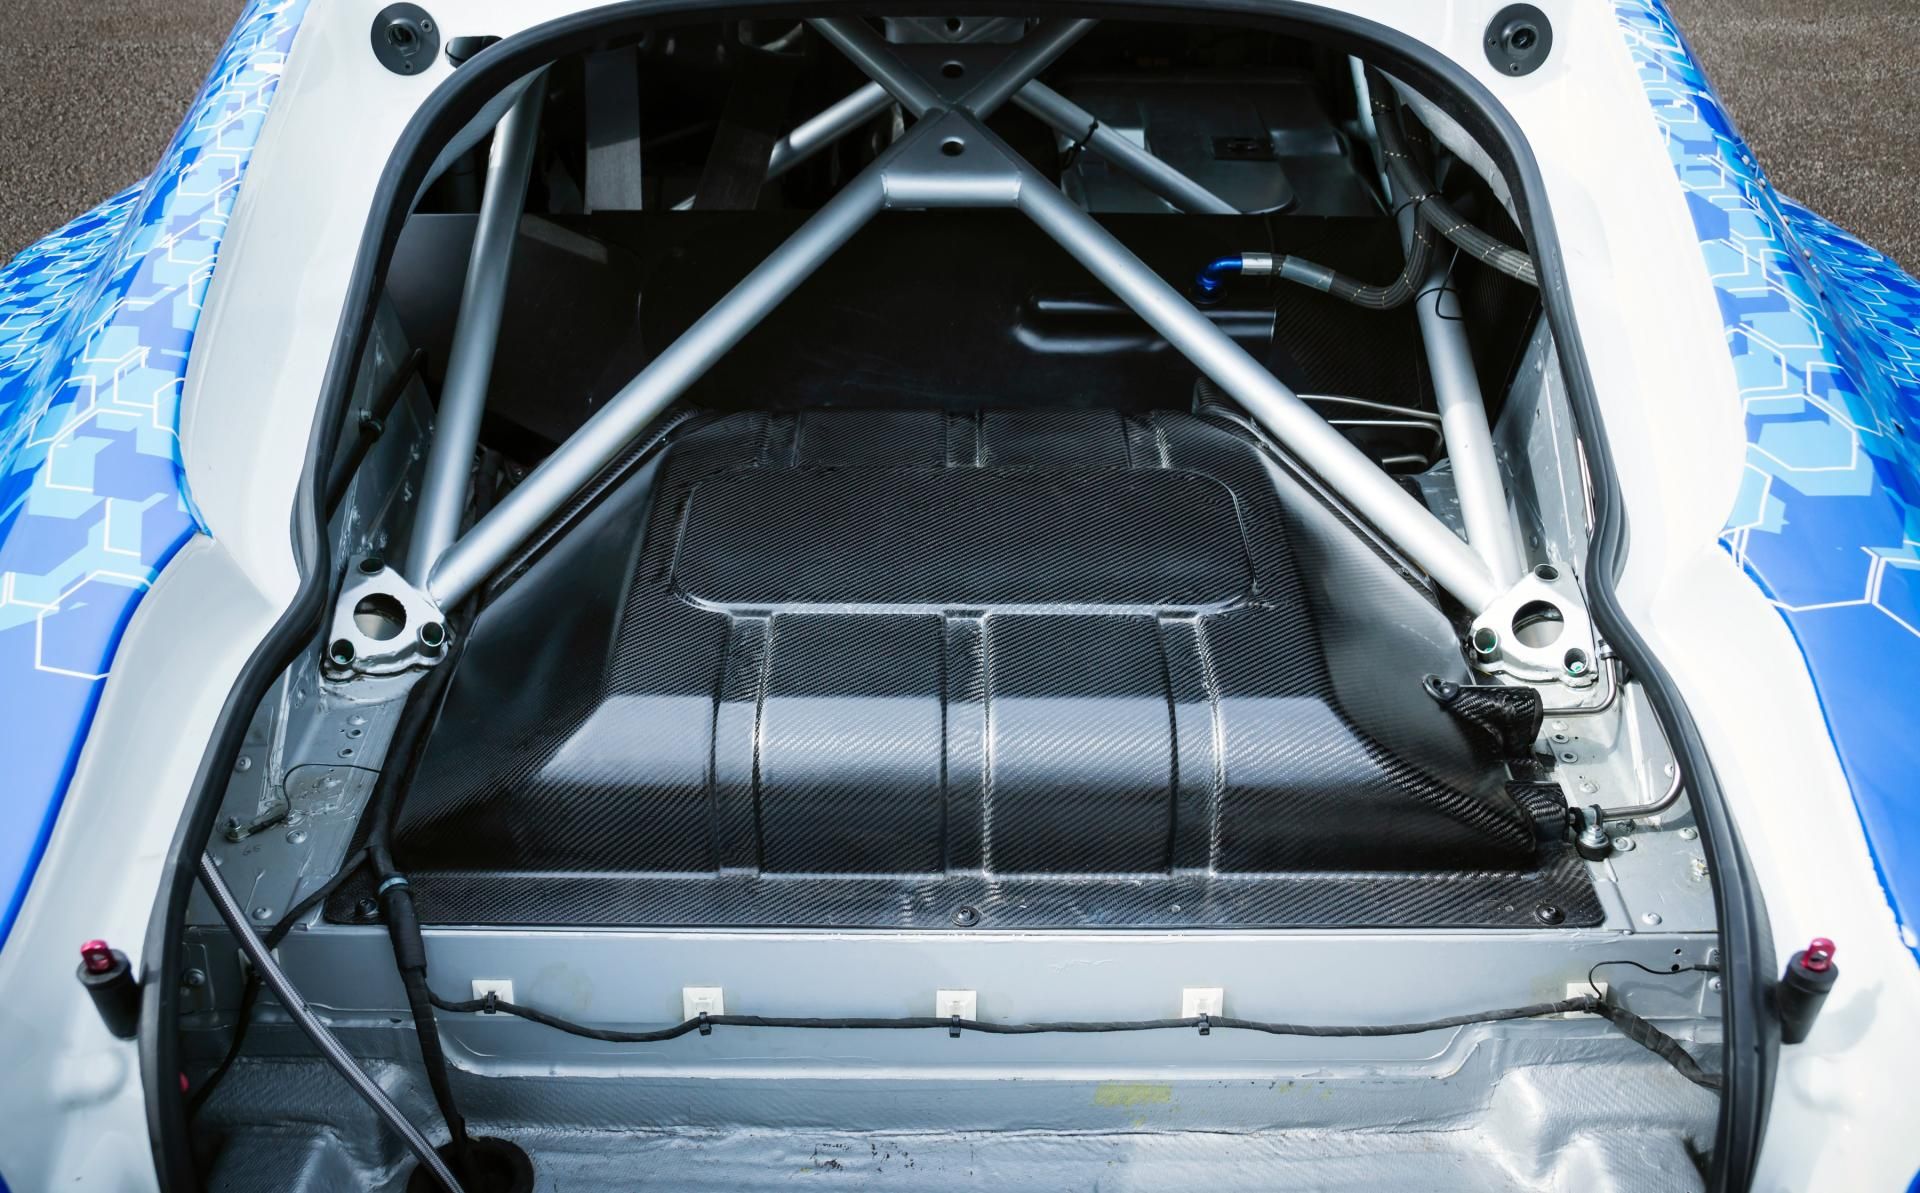 2013 Aston Martin Hybrid Hydrogen Rapide S